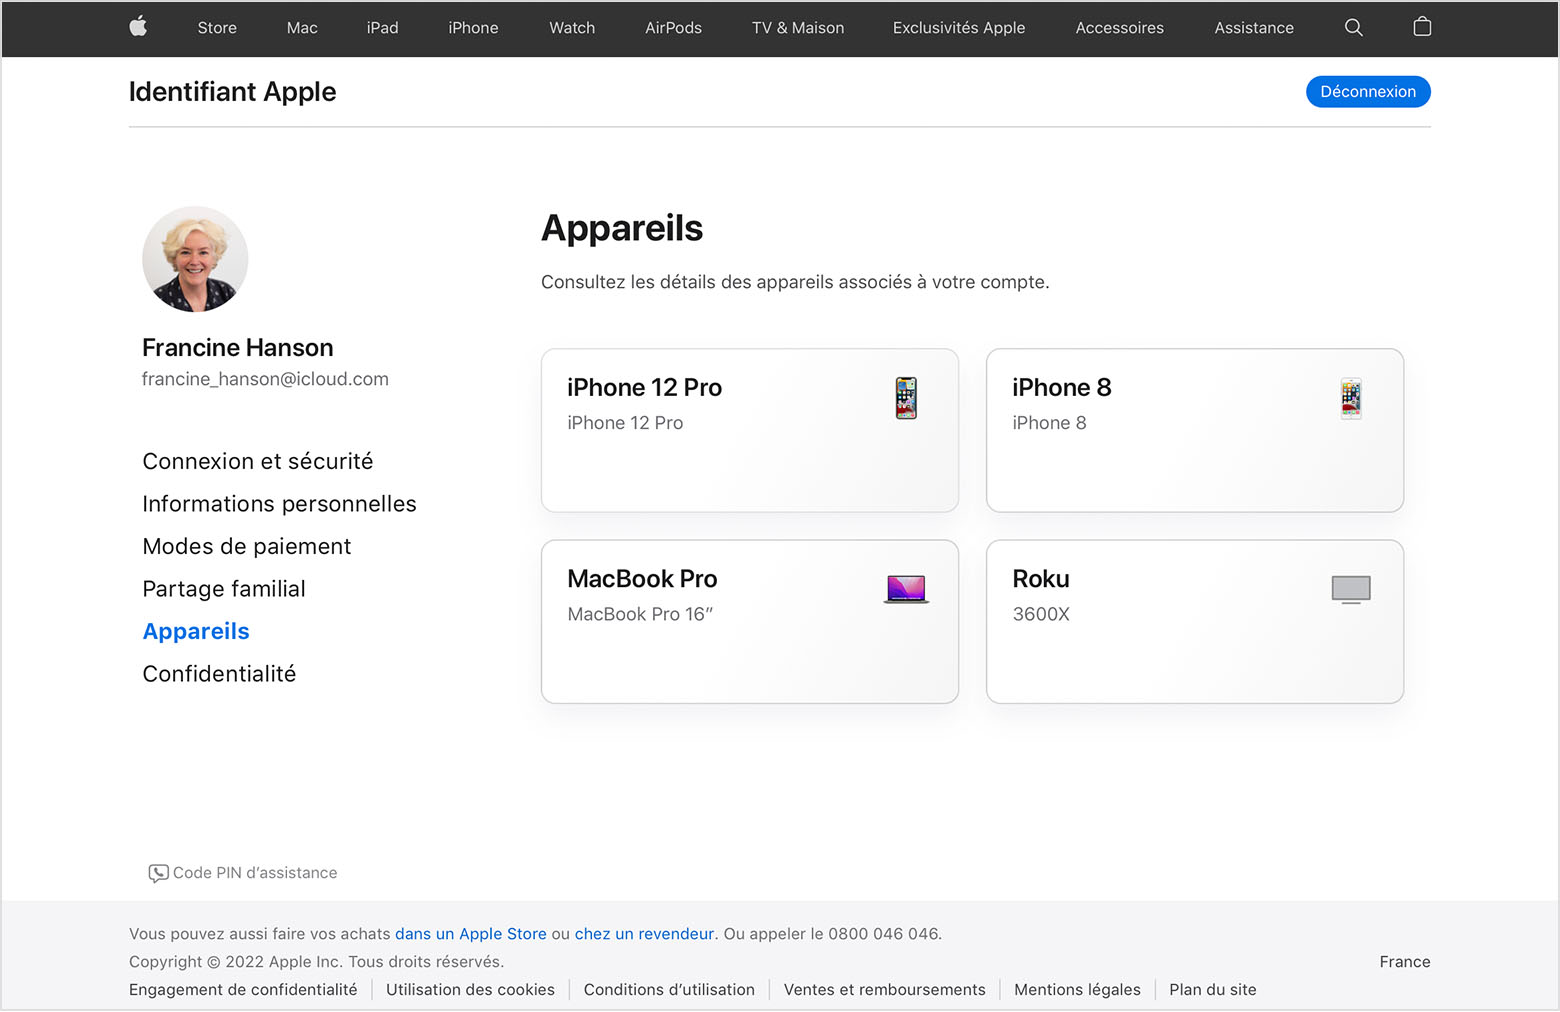 Capture d’écran de la page appleid.apple.com affichant trois appareils pour Francine Hanson : un iPhone 12 Pro, un MacBook Pro et un appareil Roku.